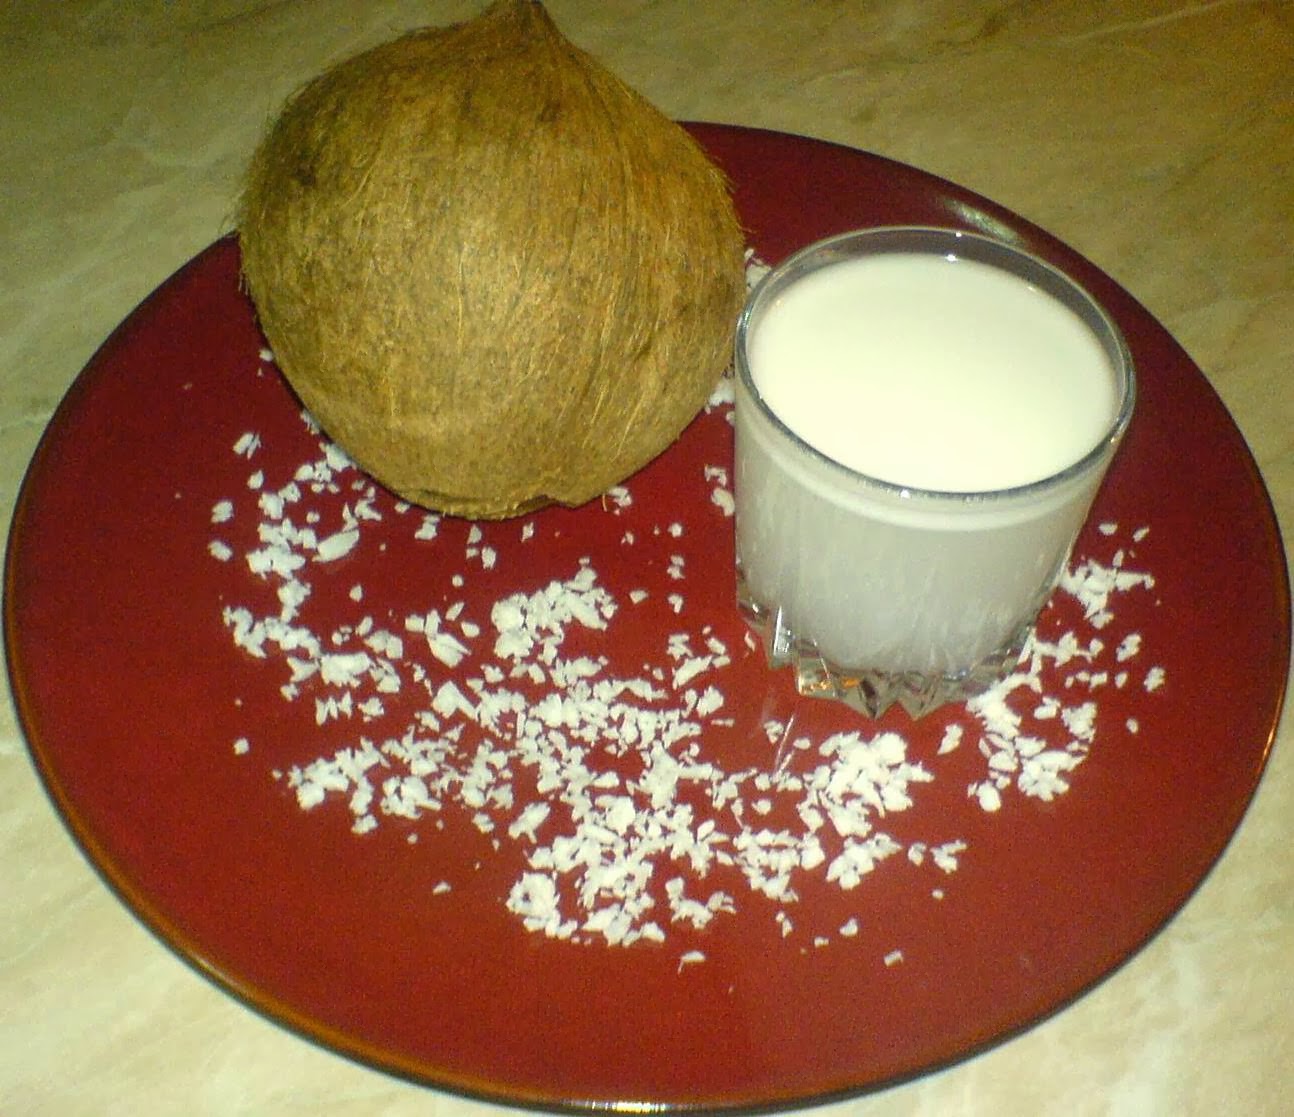 cocos, lapte de cocos, nuca de cocos, lapte din nuca de cocos, lapte din fulge de nuca de cocos, retete culinare, preparate culinare, bauturi, bauturi de casa, fulgi de cocos, fulgi de nuca de cocos, reteta lapte de cocos, retete lapte de cocos, retete cocos, reteta cocos, retete lapte cocos, 